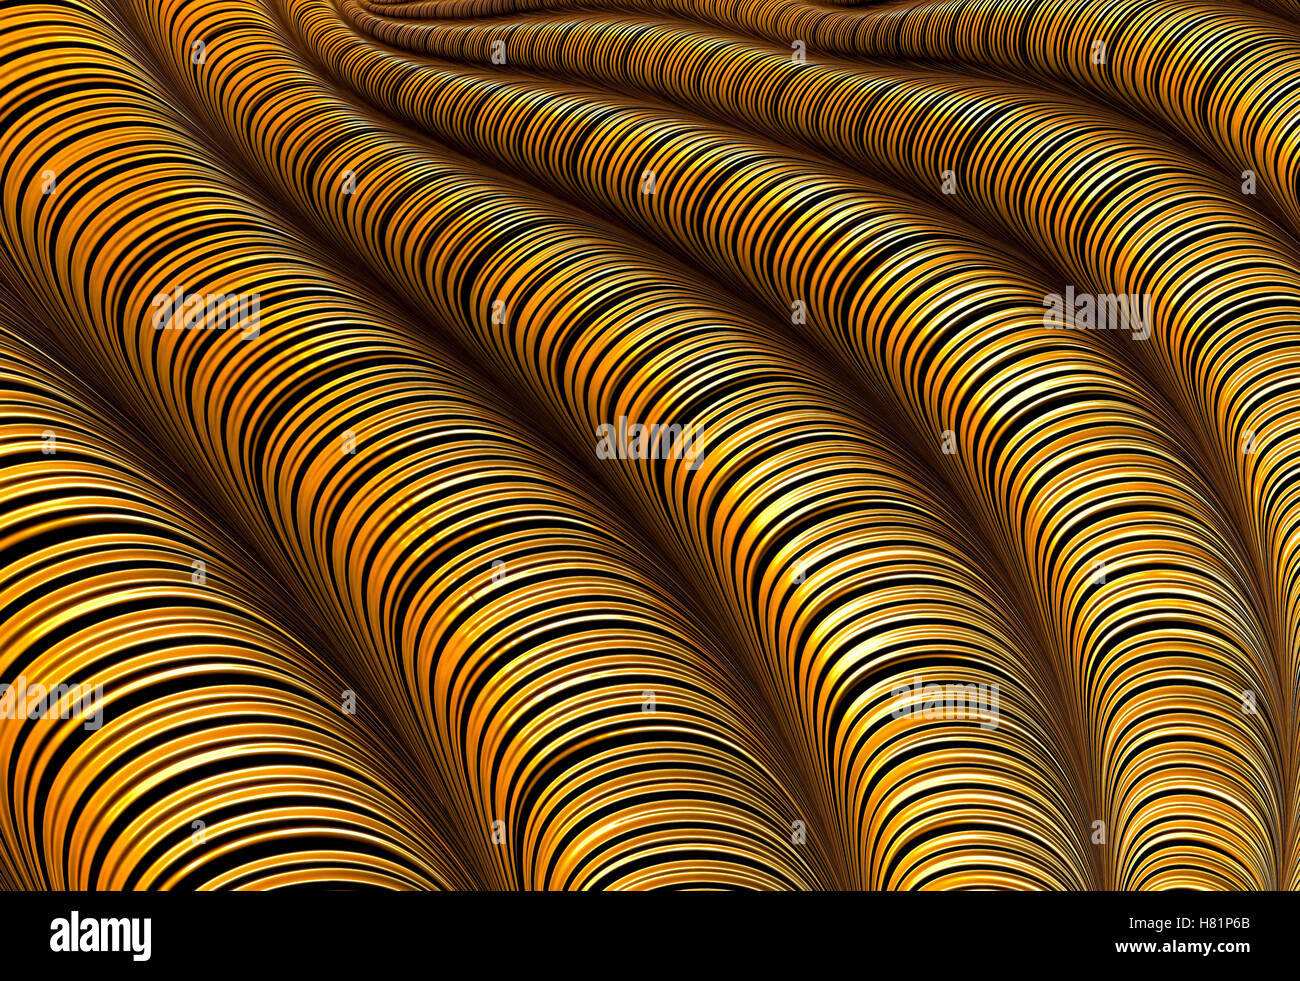 Les tuyaux à rayures - abstract image générée numériquement Banque D'Images